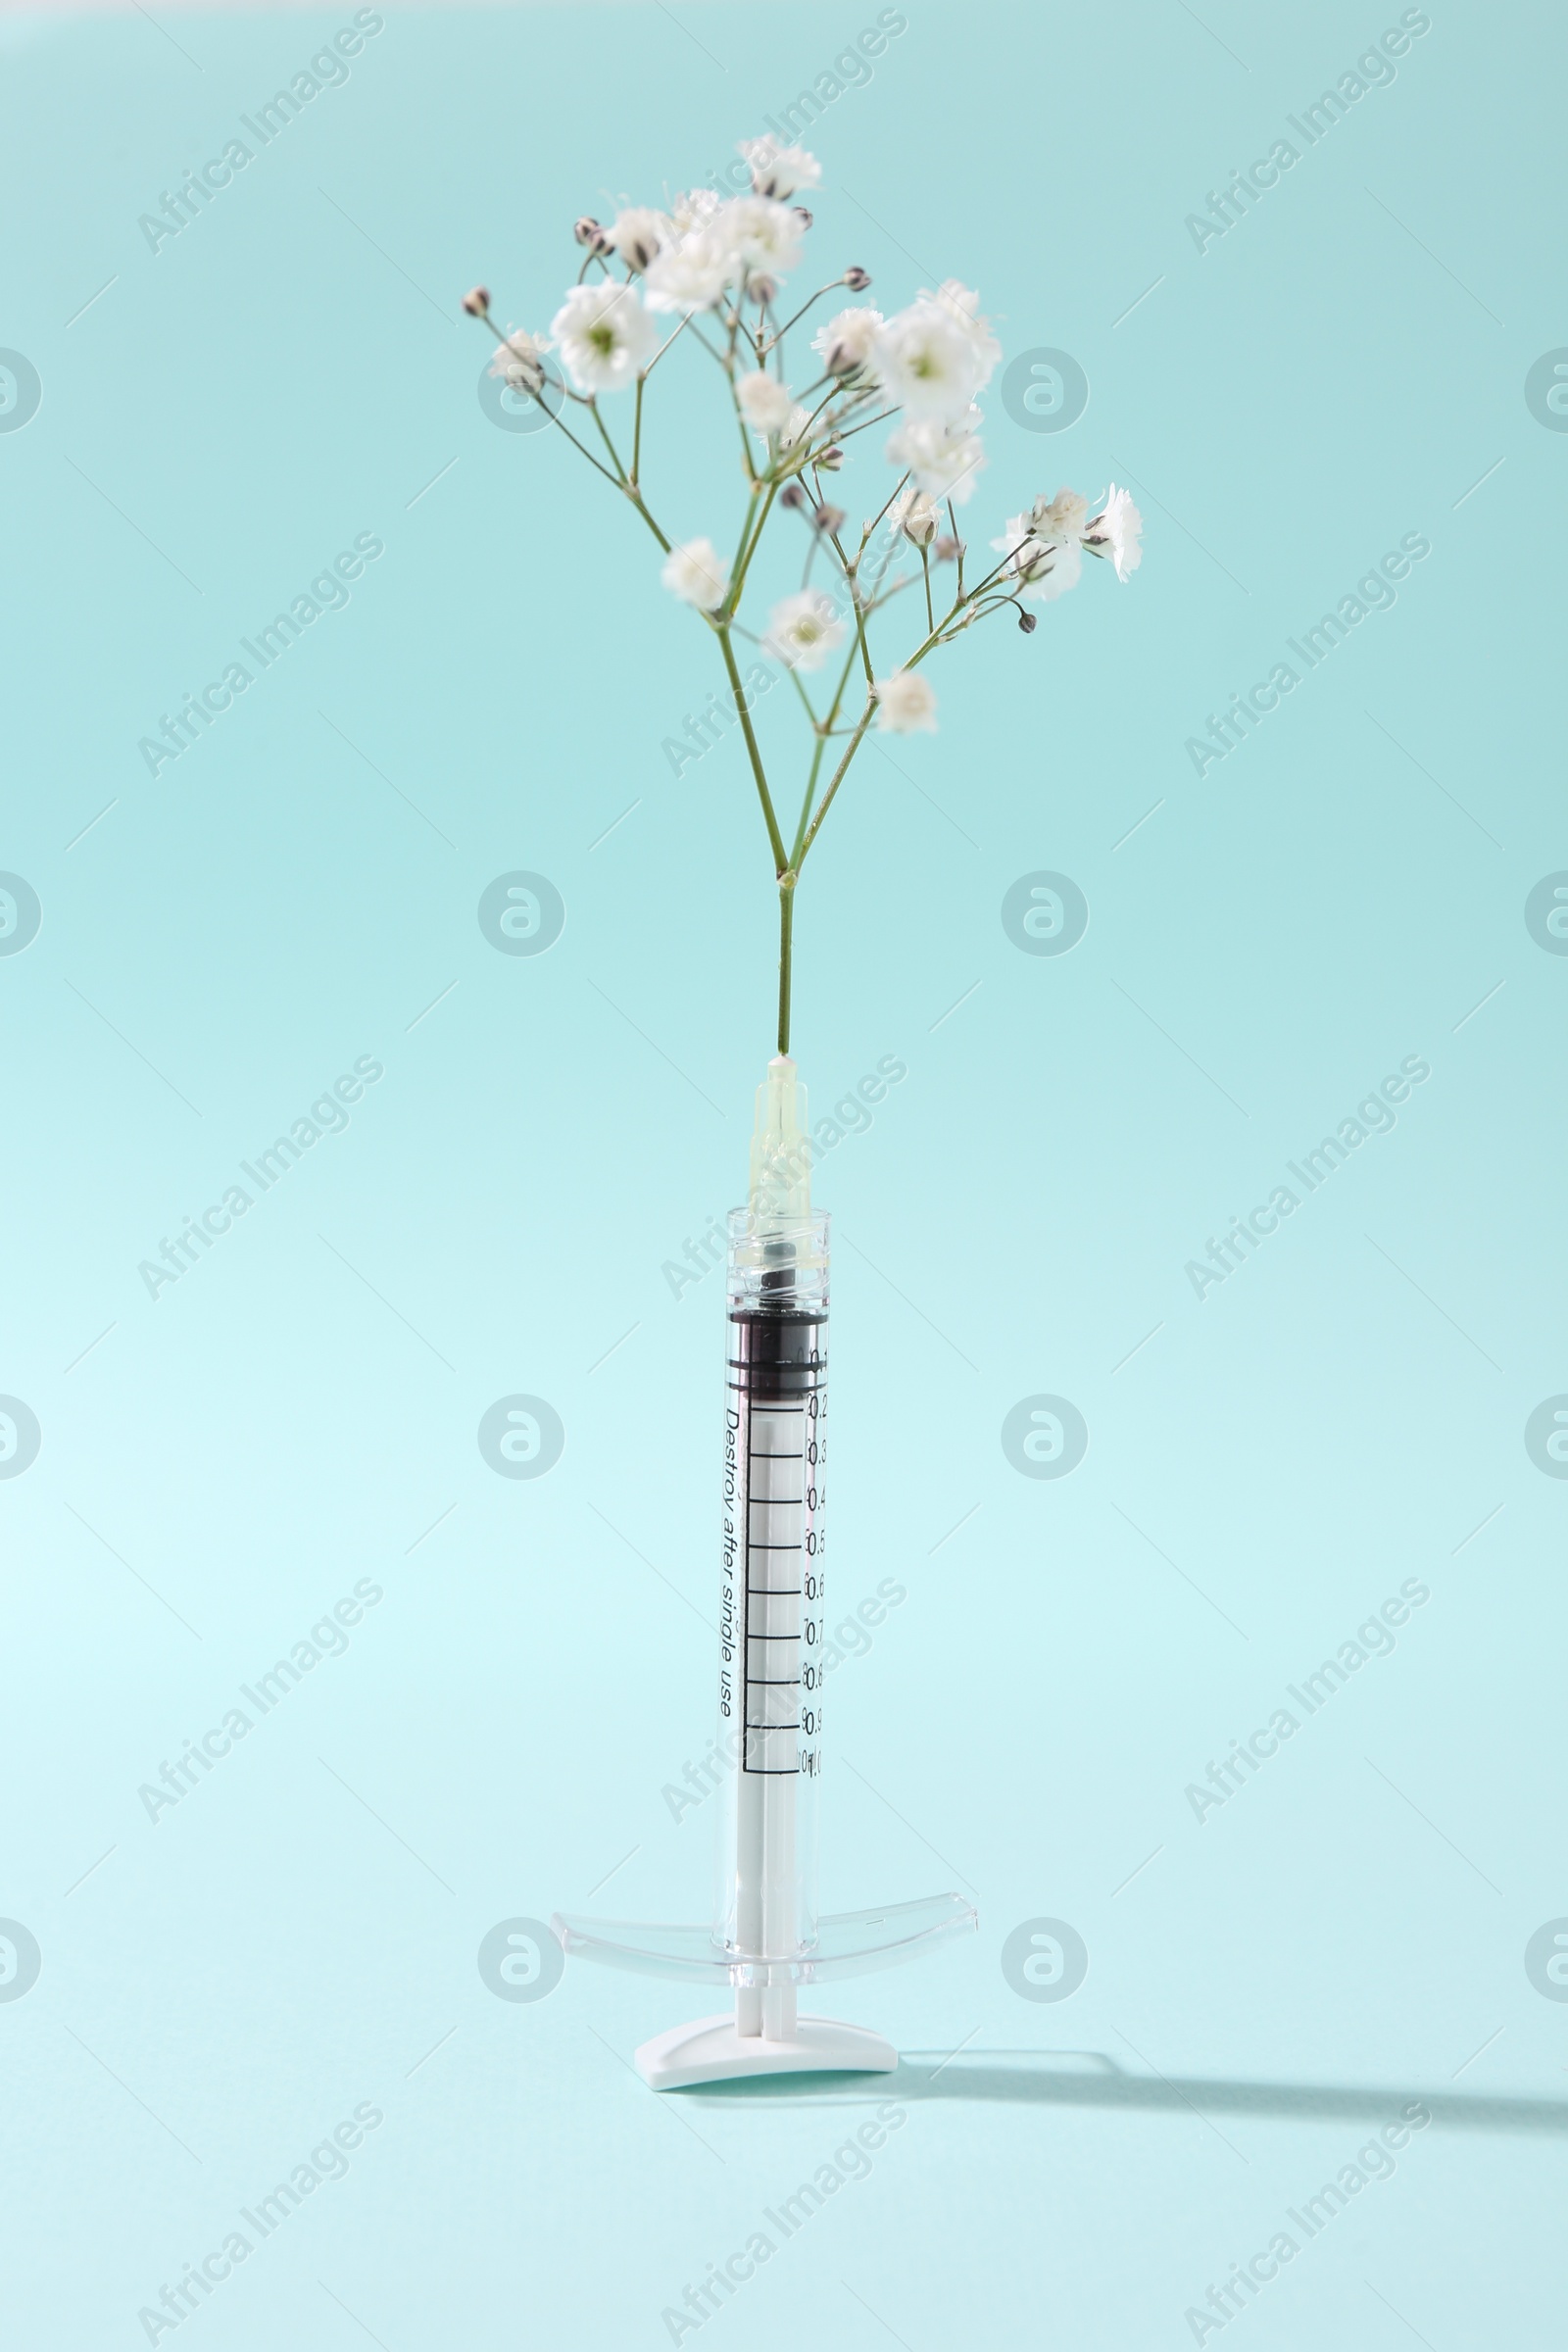 Photo of Cosmetology. Medical syringe and gypsophila on light blue background